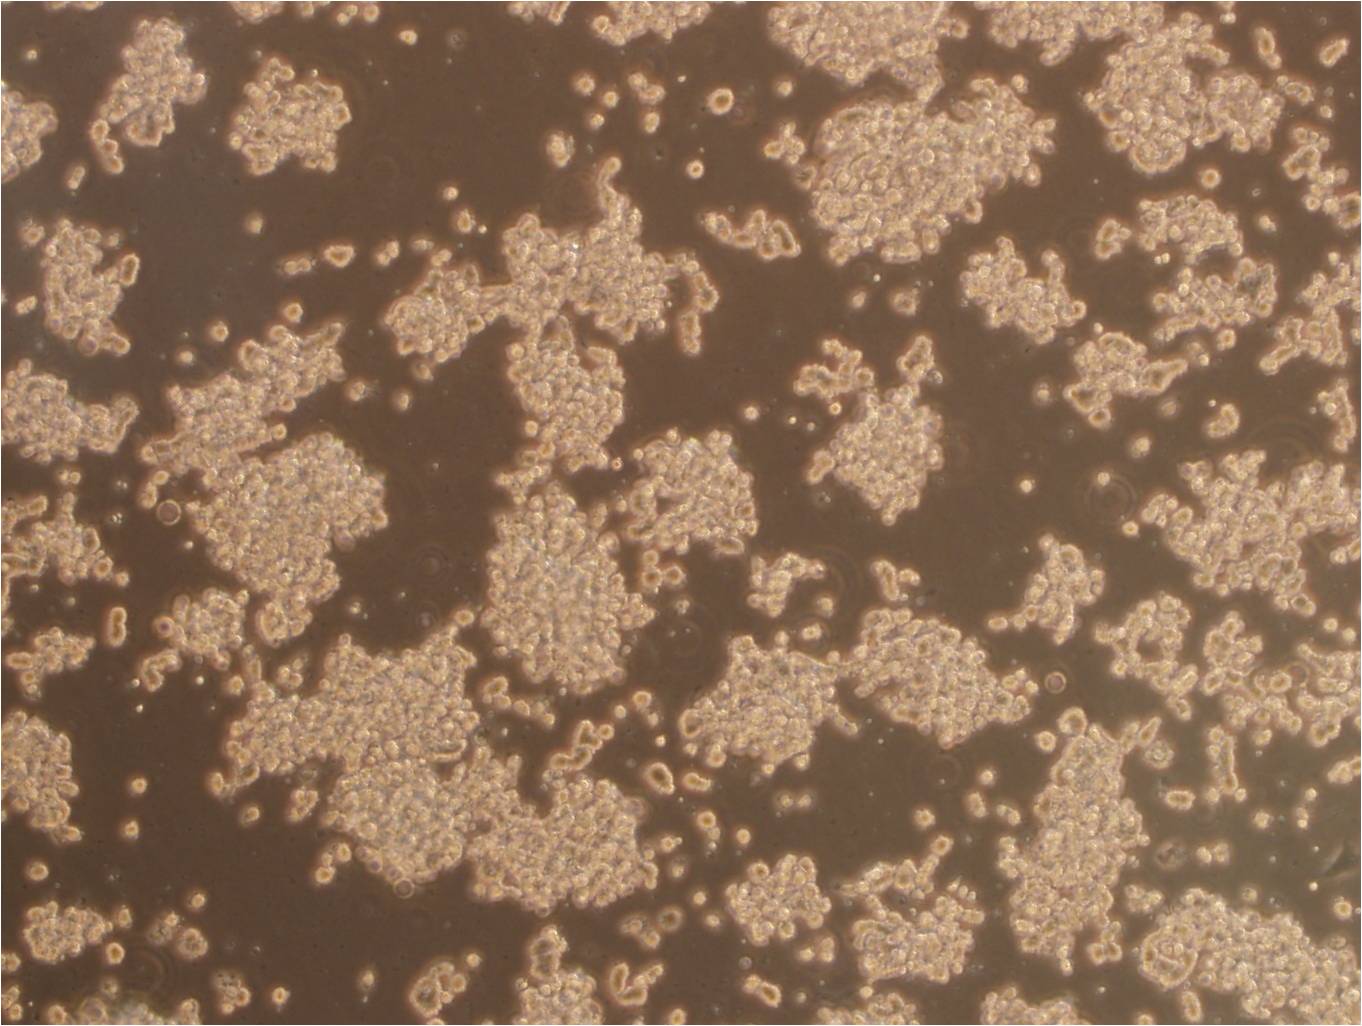 P388D1 Cell:小鼠淋巴样瘤细胞系